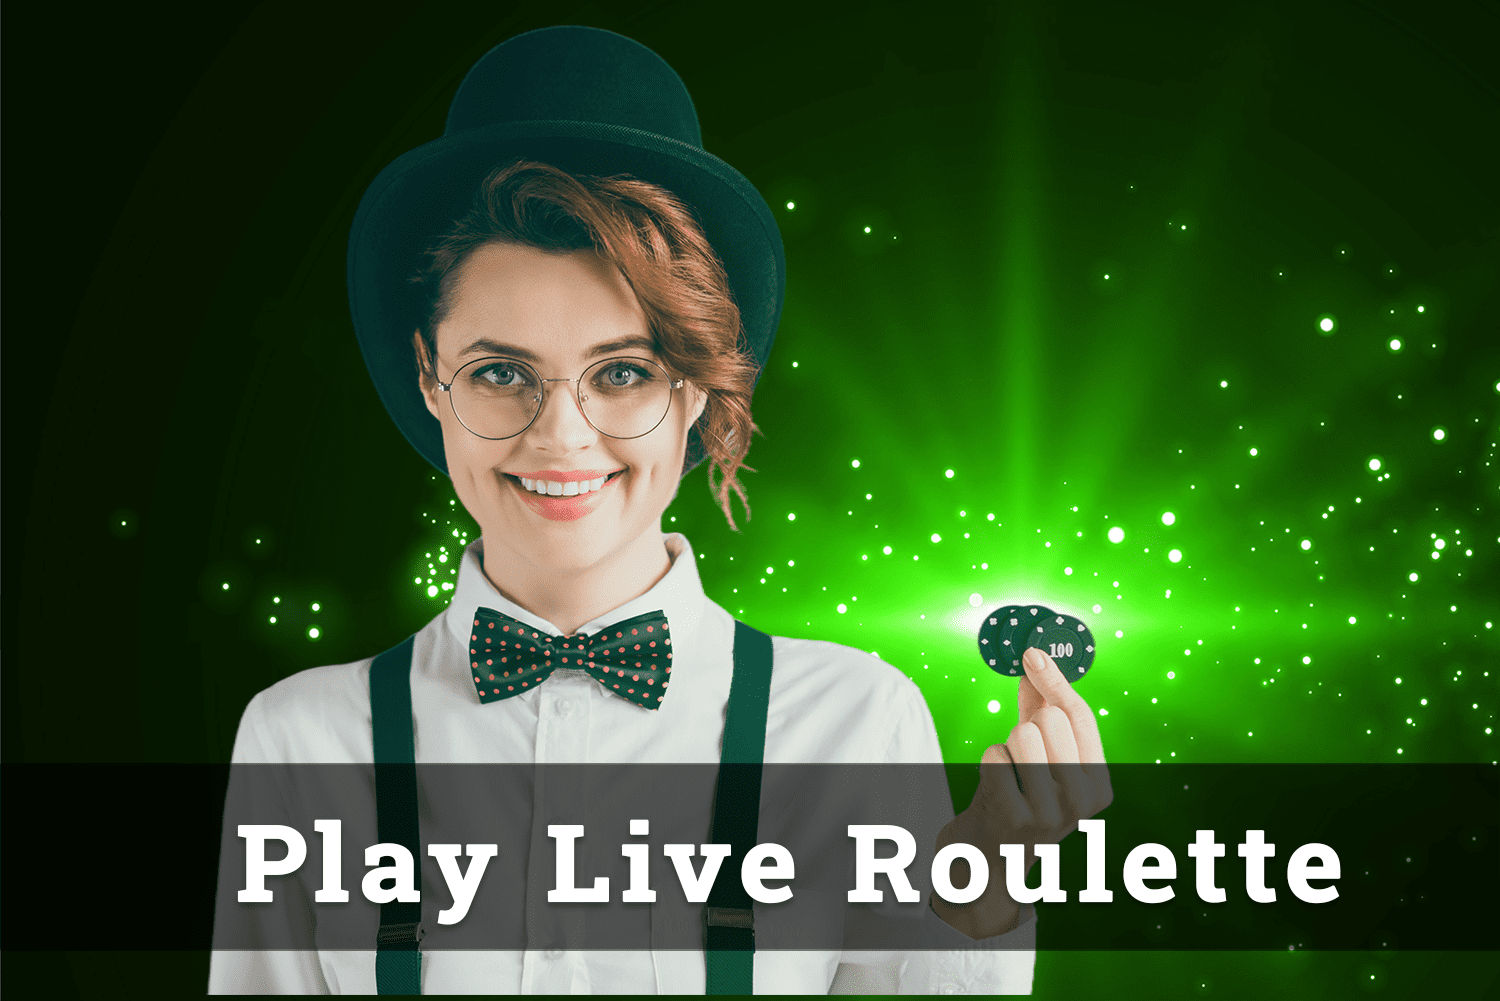 Play live roulette online qpzqkie